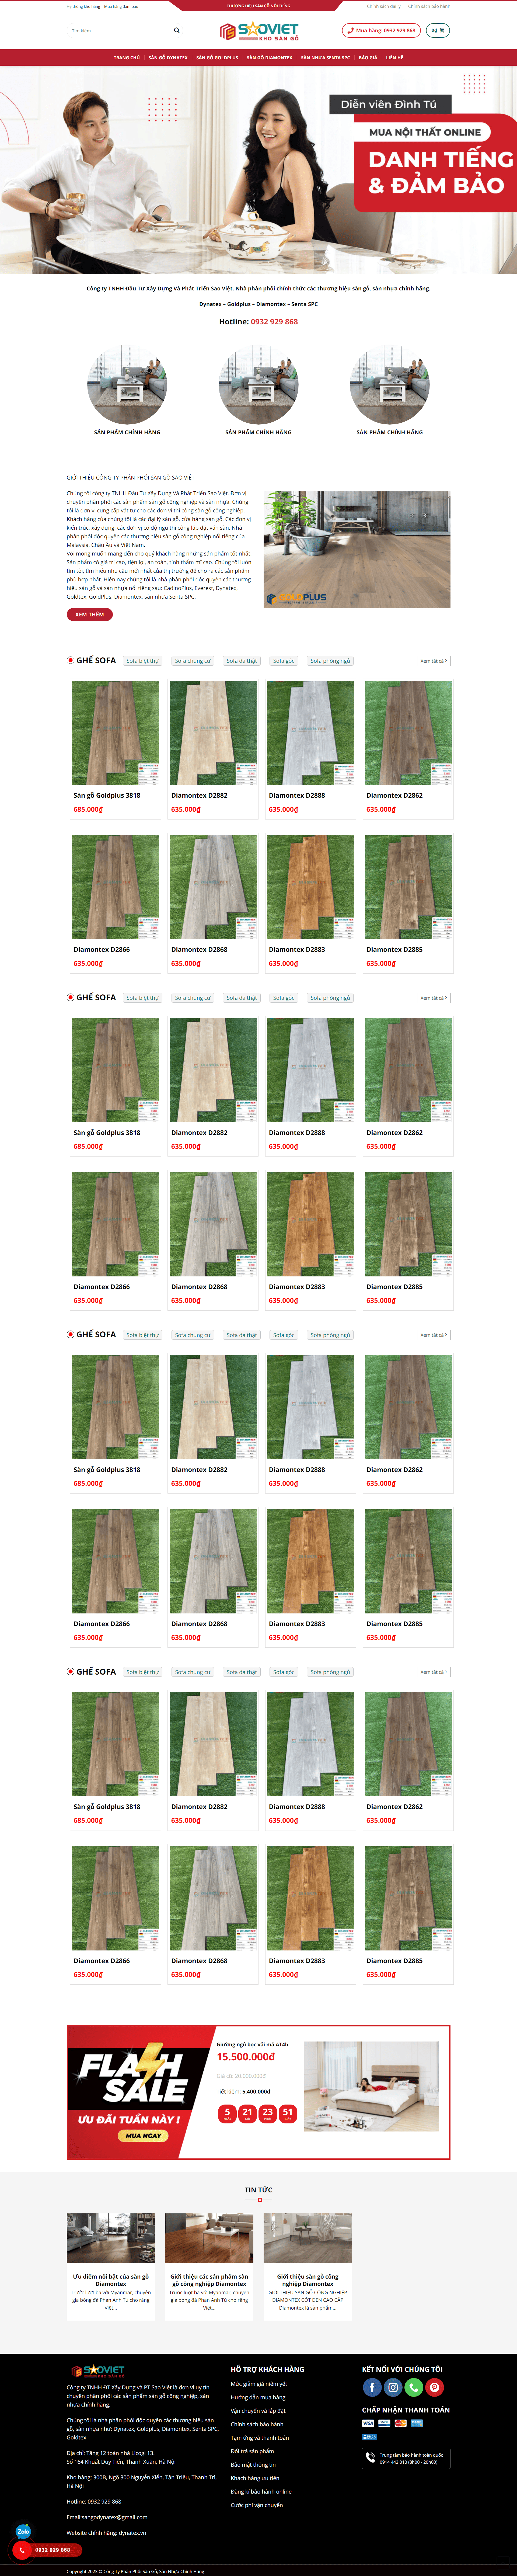 mẫu website gỗ, nội thất dynatex version 1